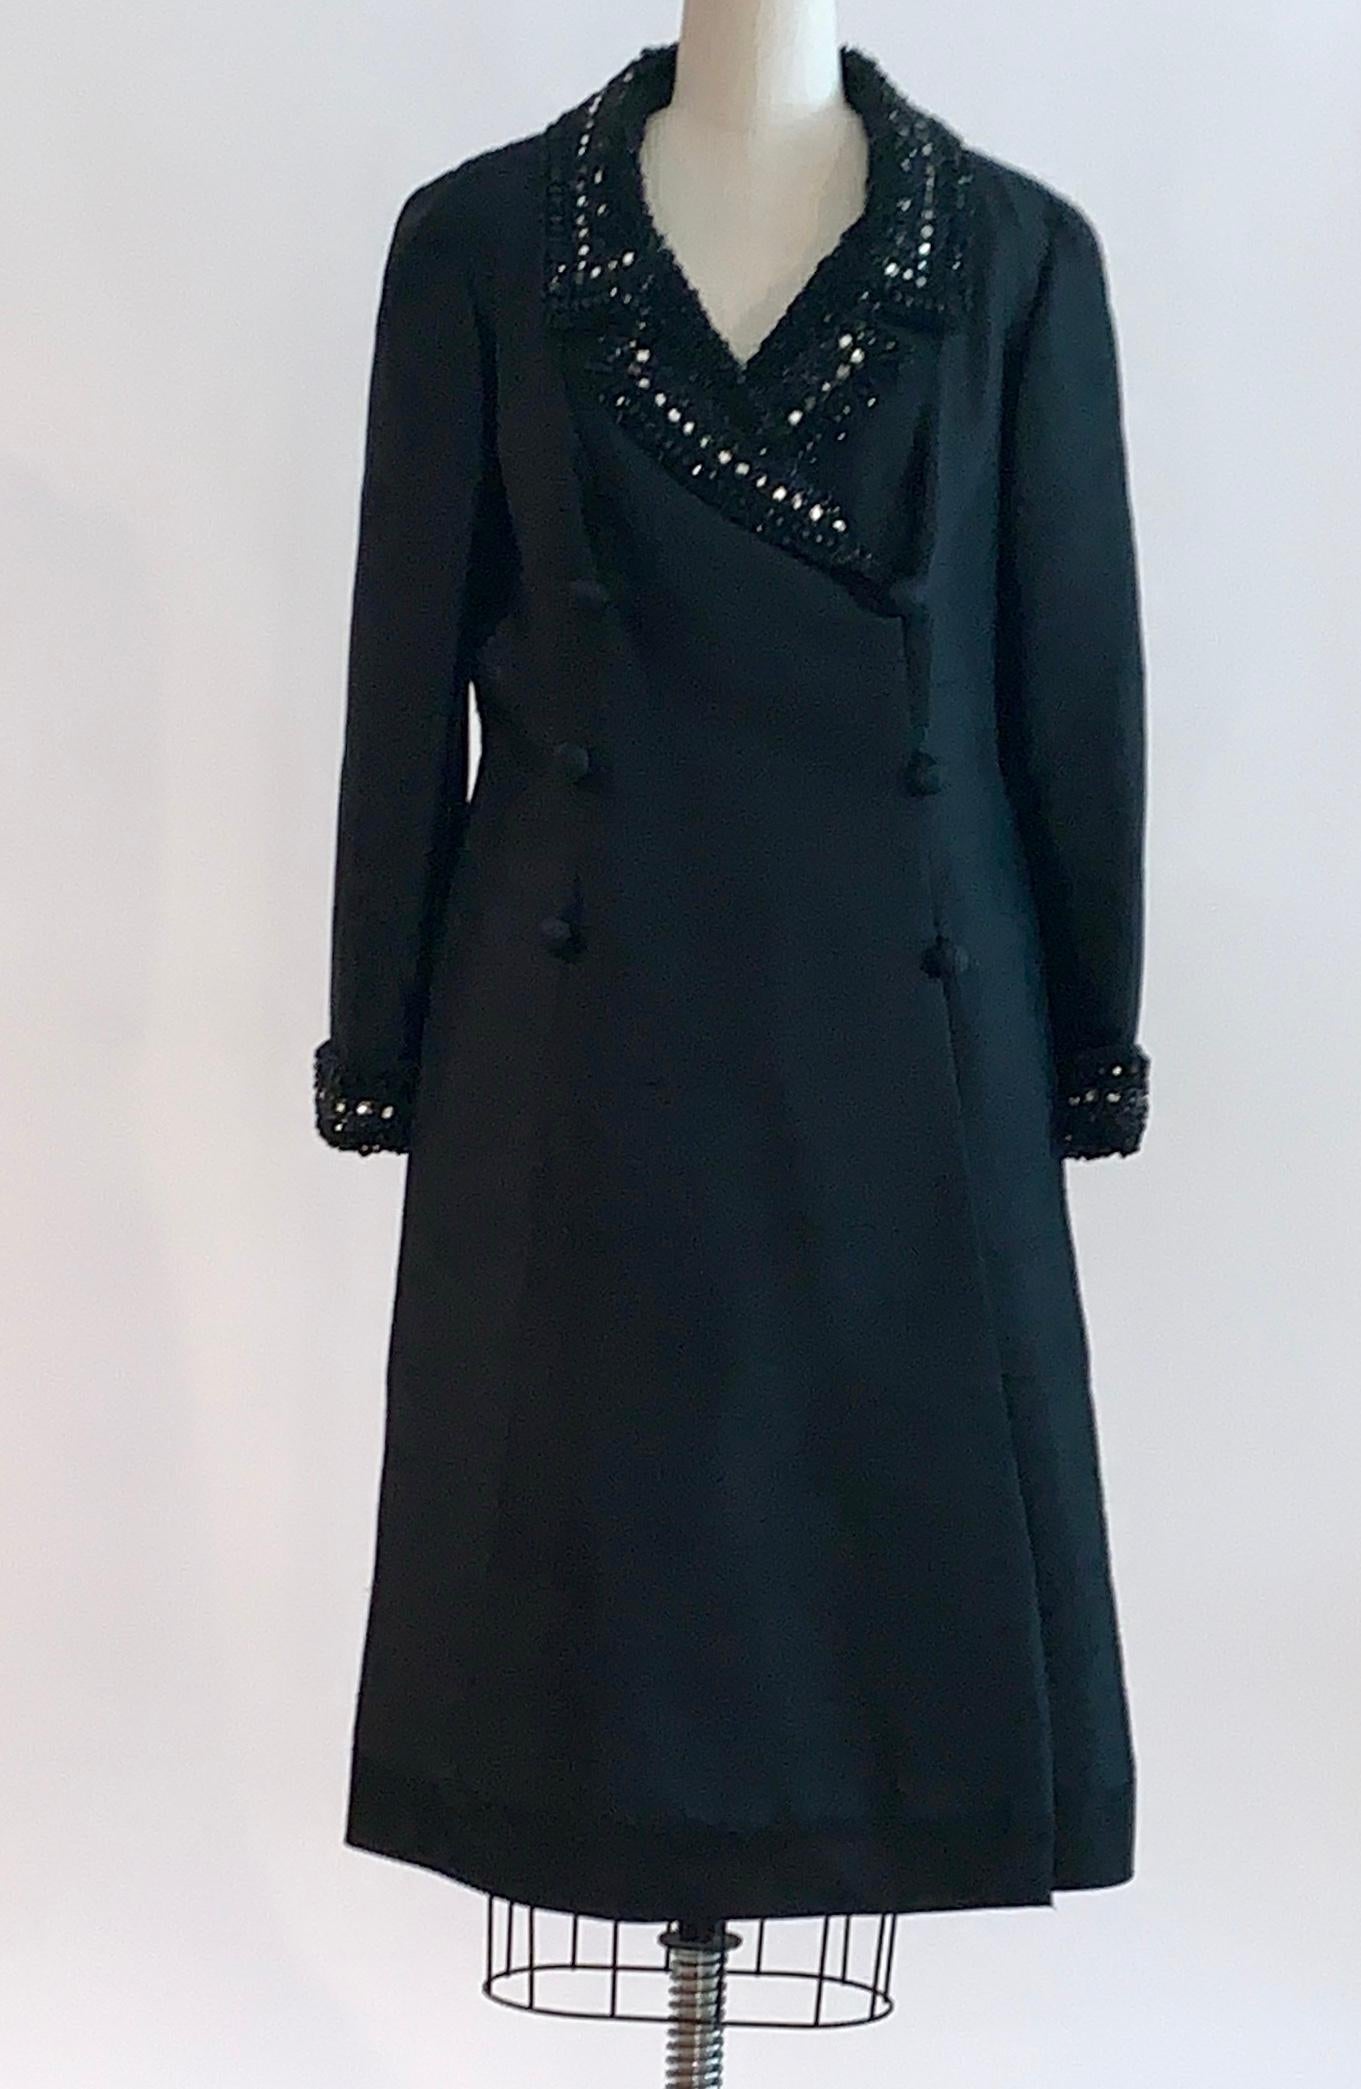 Jean Lutece Vintage 1960s schwarzer Seidenmantel (oder Mantelkleid) mit schwarzem Strass und Perlenverzierung an Kragen und Manschetten. Die Rohseide ist durch und durch natürlich gekrempelt.  Glatter schwarzer Saum am unteren Rand. Wird mit einem